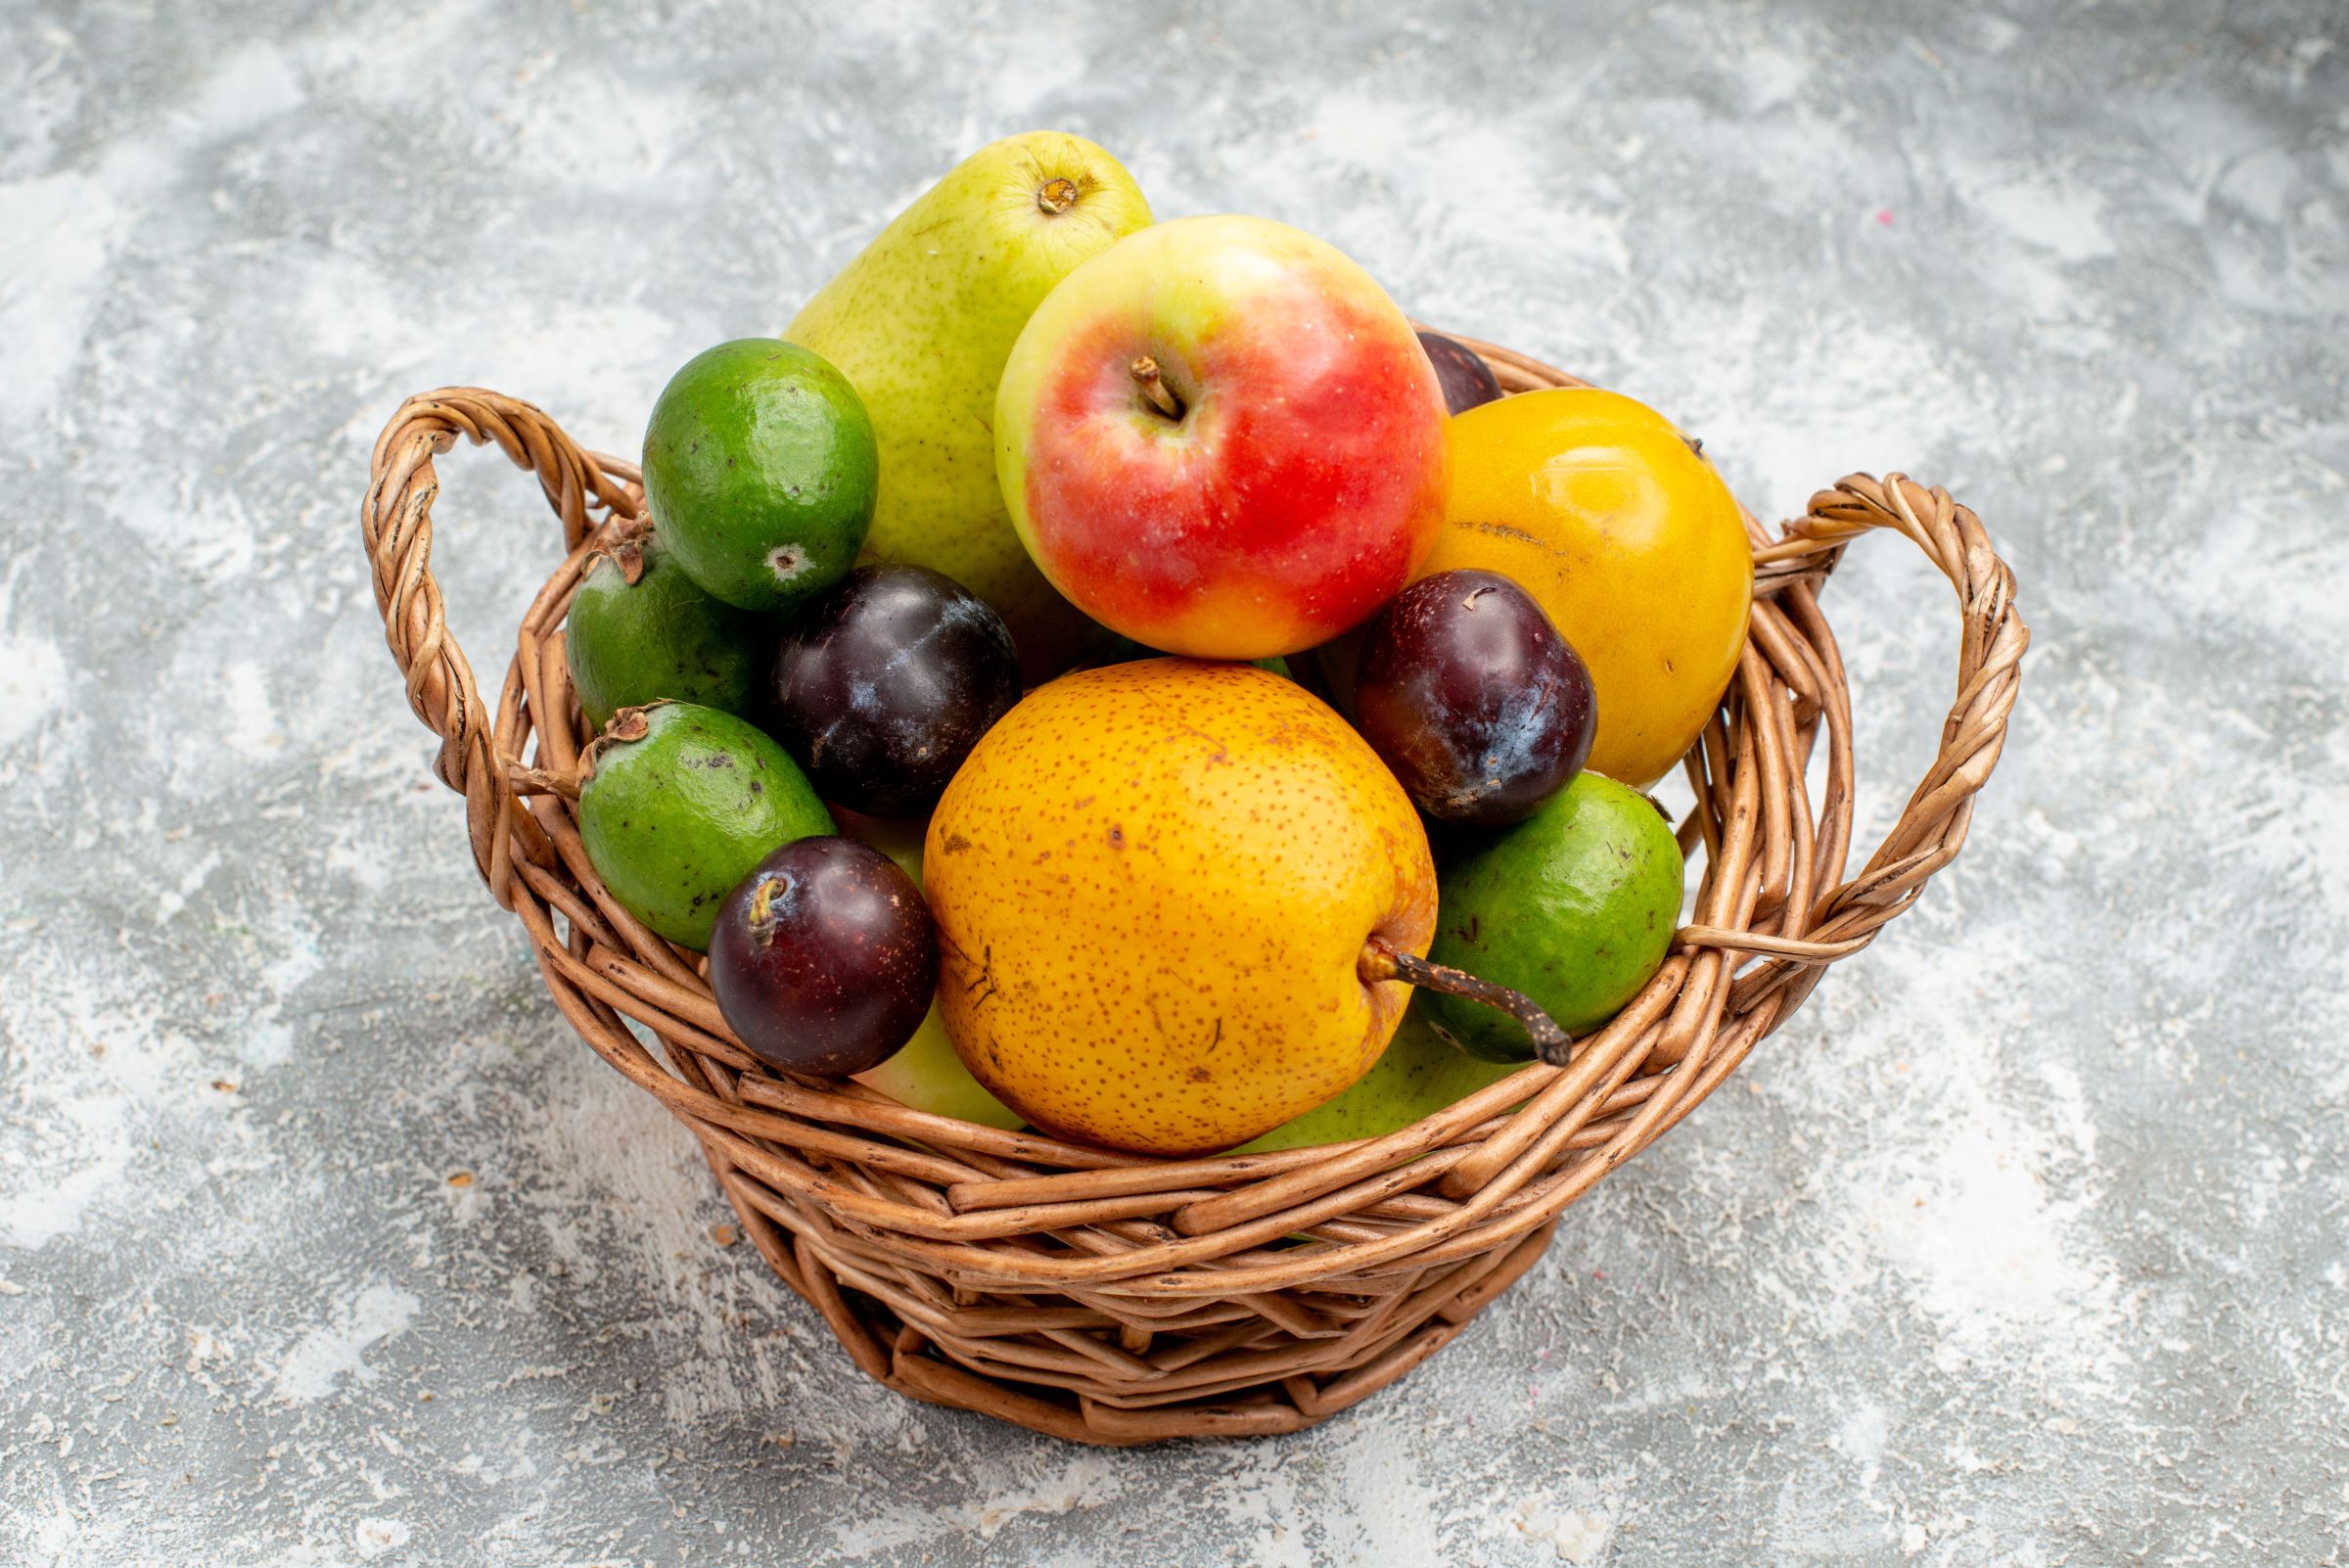 סלסלות פירות ומארזי פירות יבשים במשלוח: הכירו את חברת סלסלה